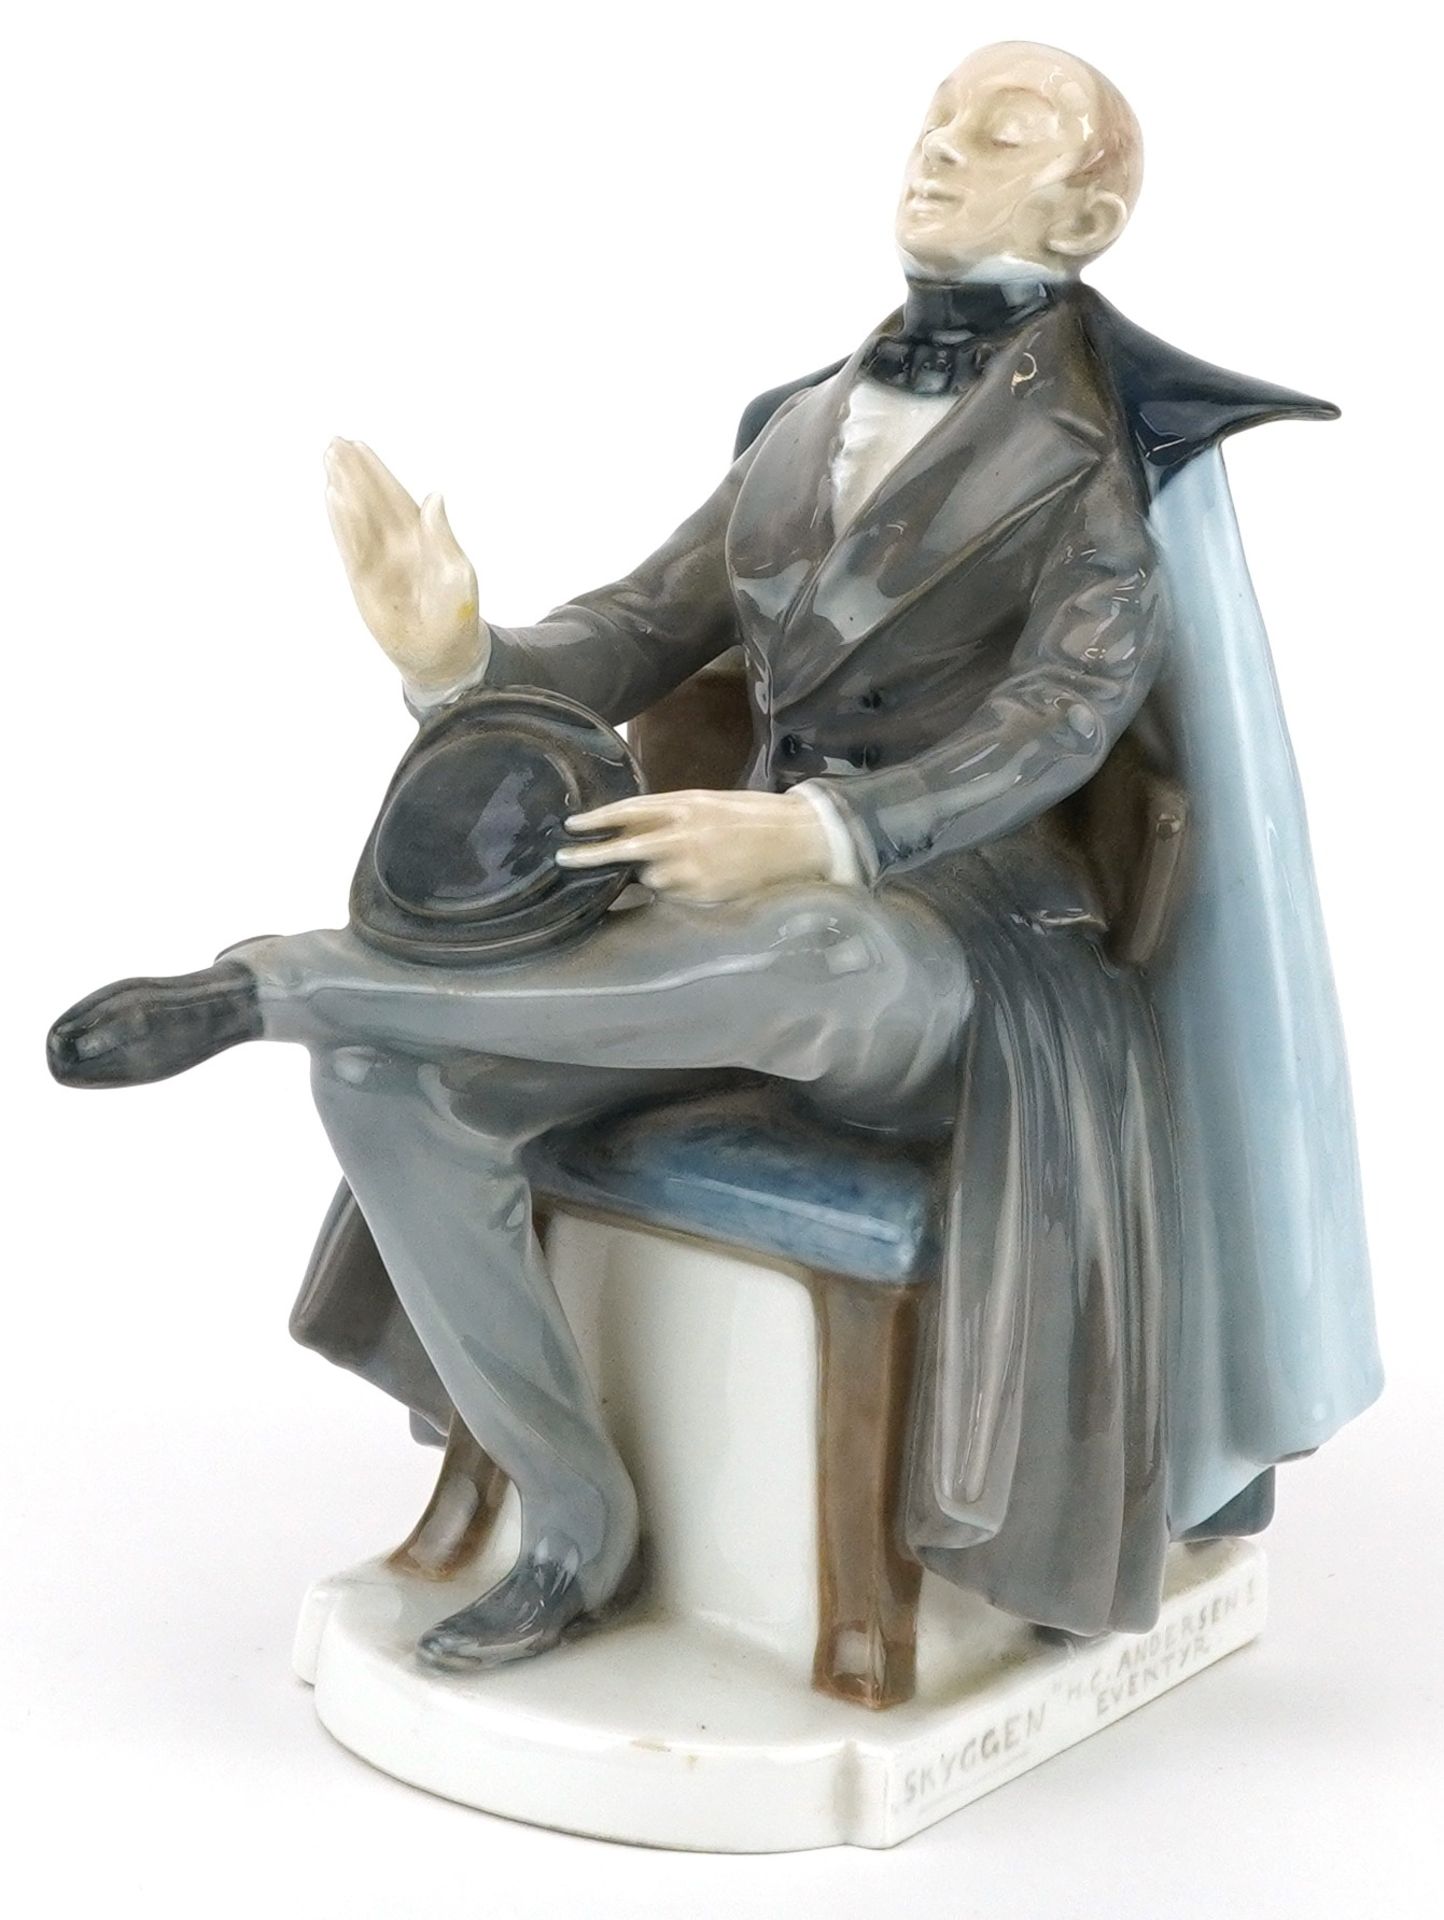 Christian Thomsen for Royal Copenhagen, Danish porcelain Hans Christian Andersen's figure The